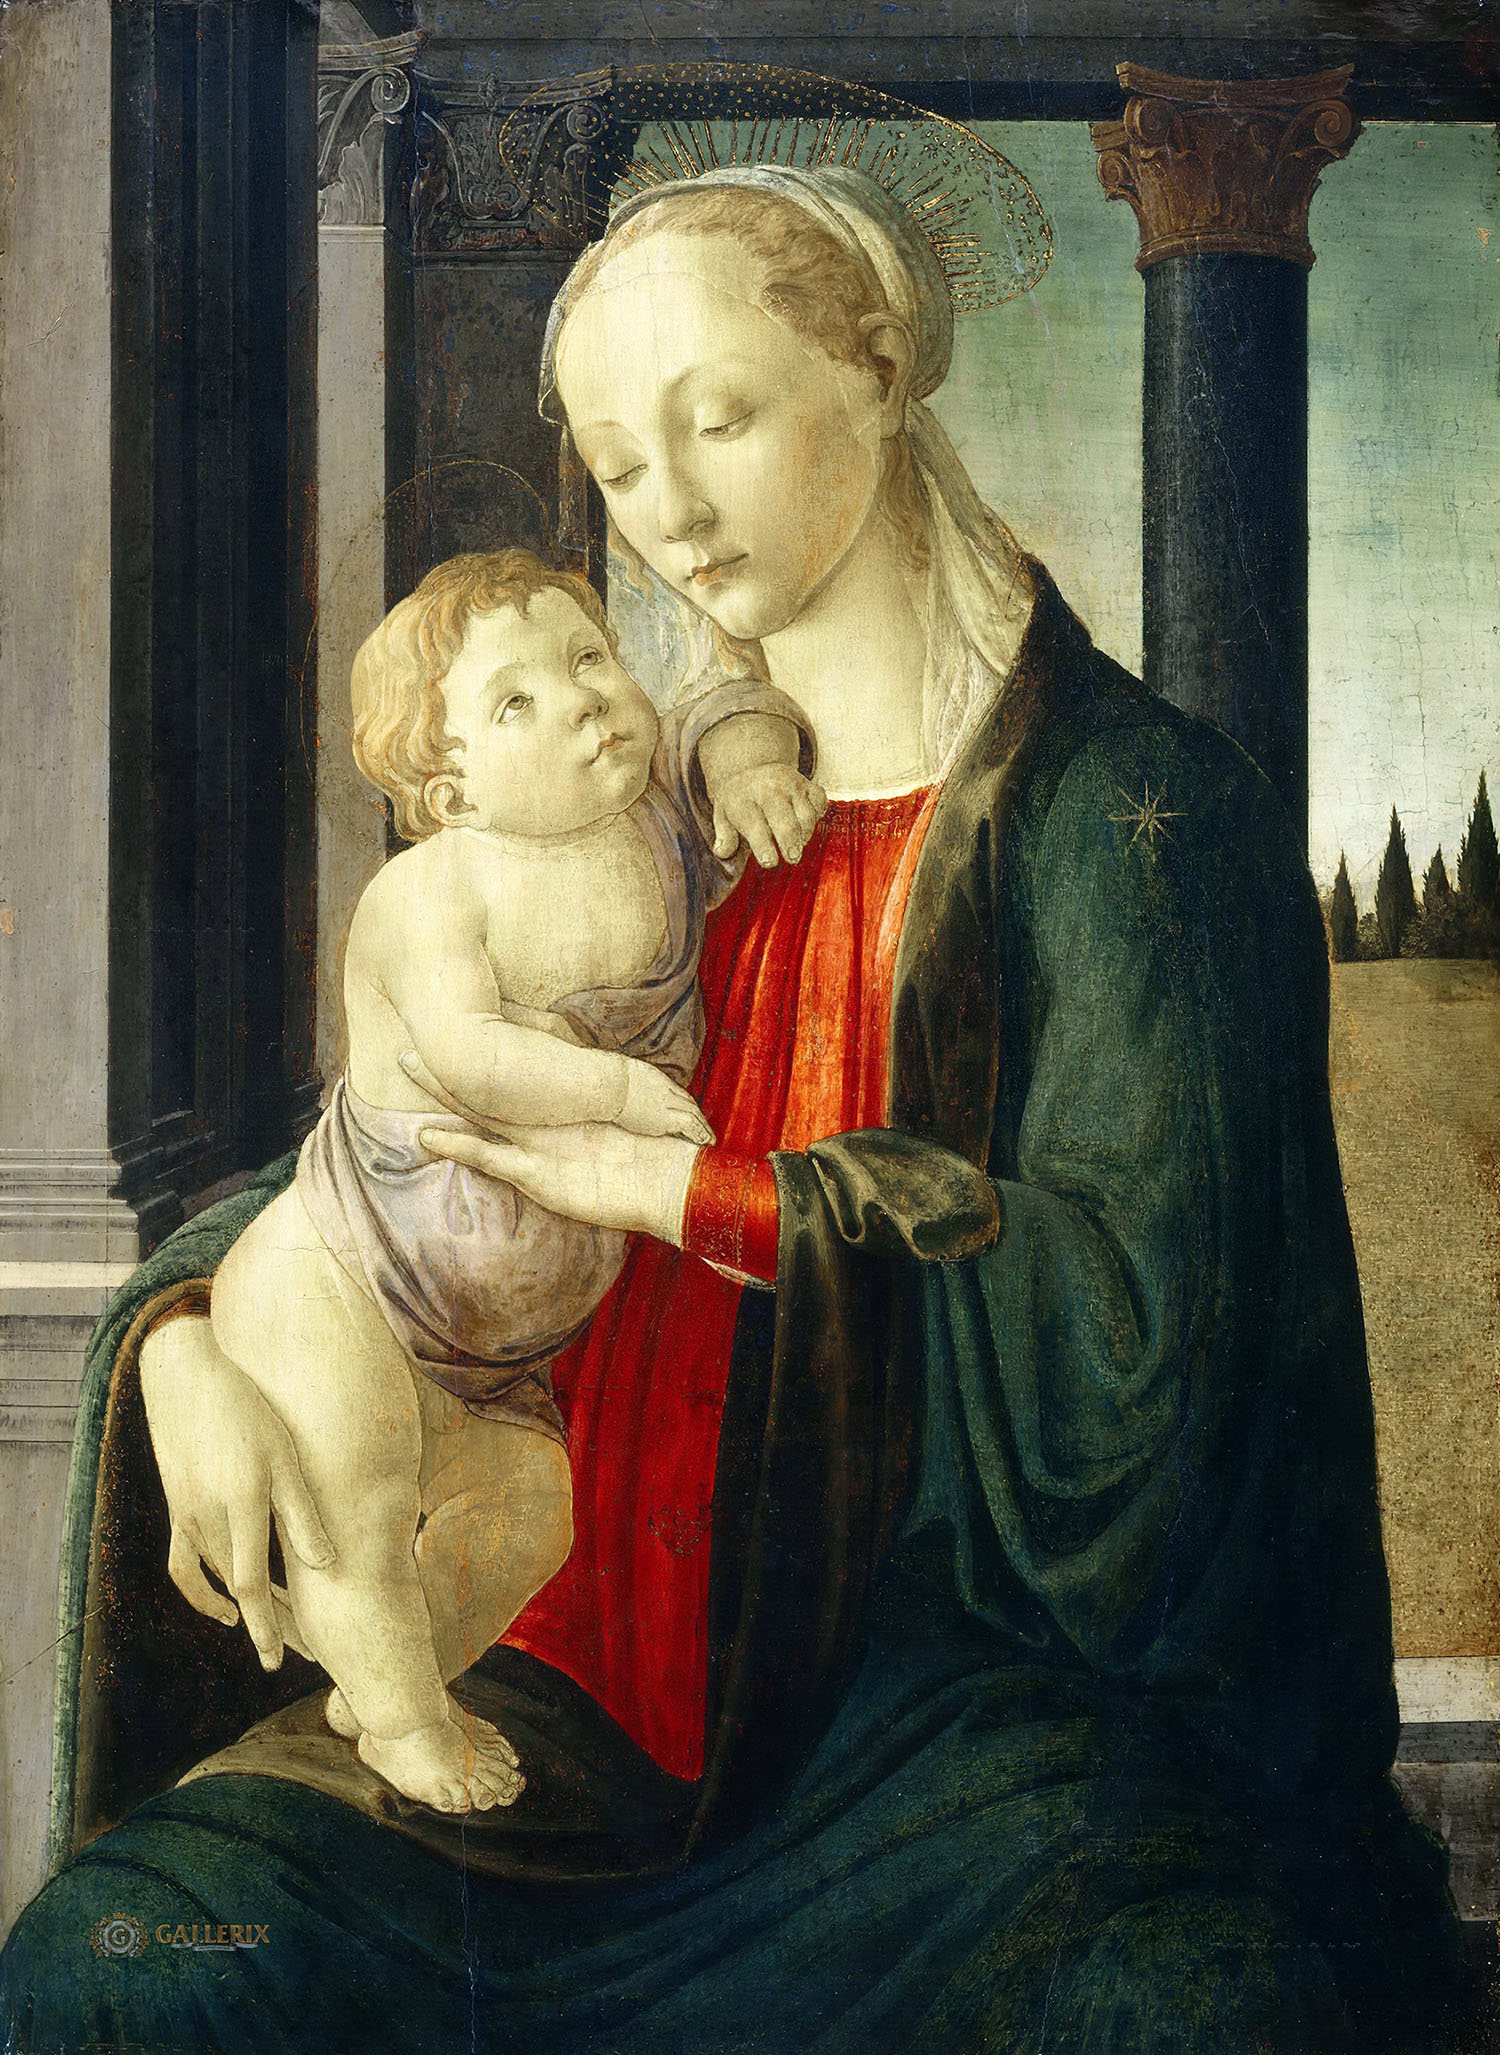 Сандро Боттичелли. "Мадонна с Младенцем". около 1470. Национальная галерея искусств, Вашингтон.